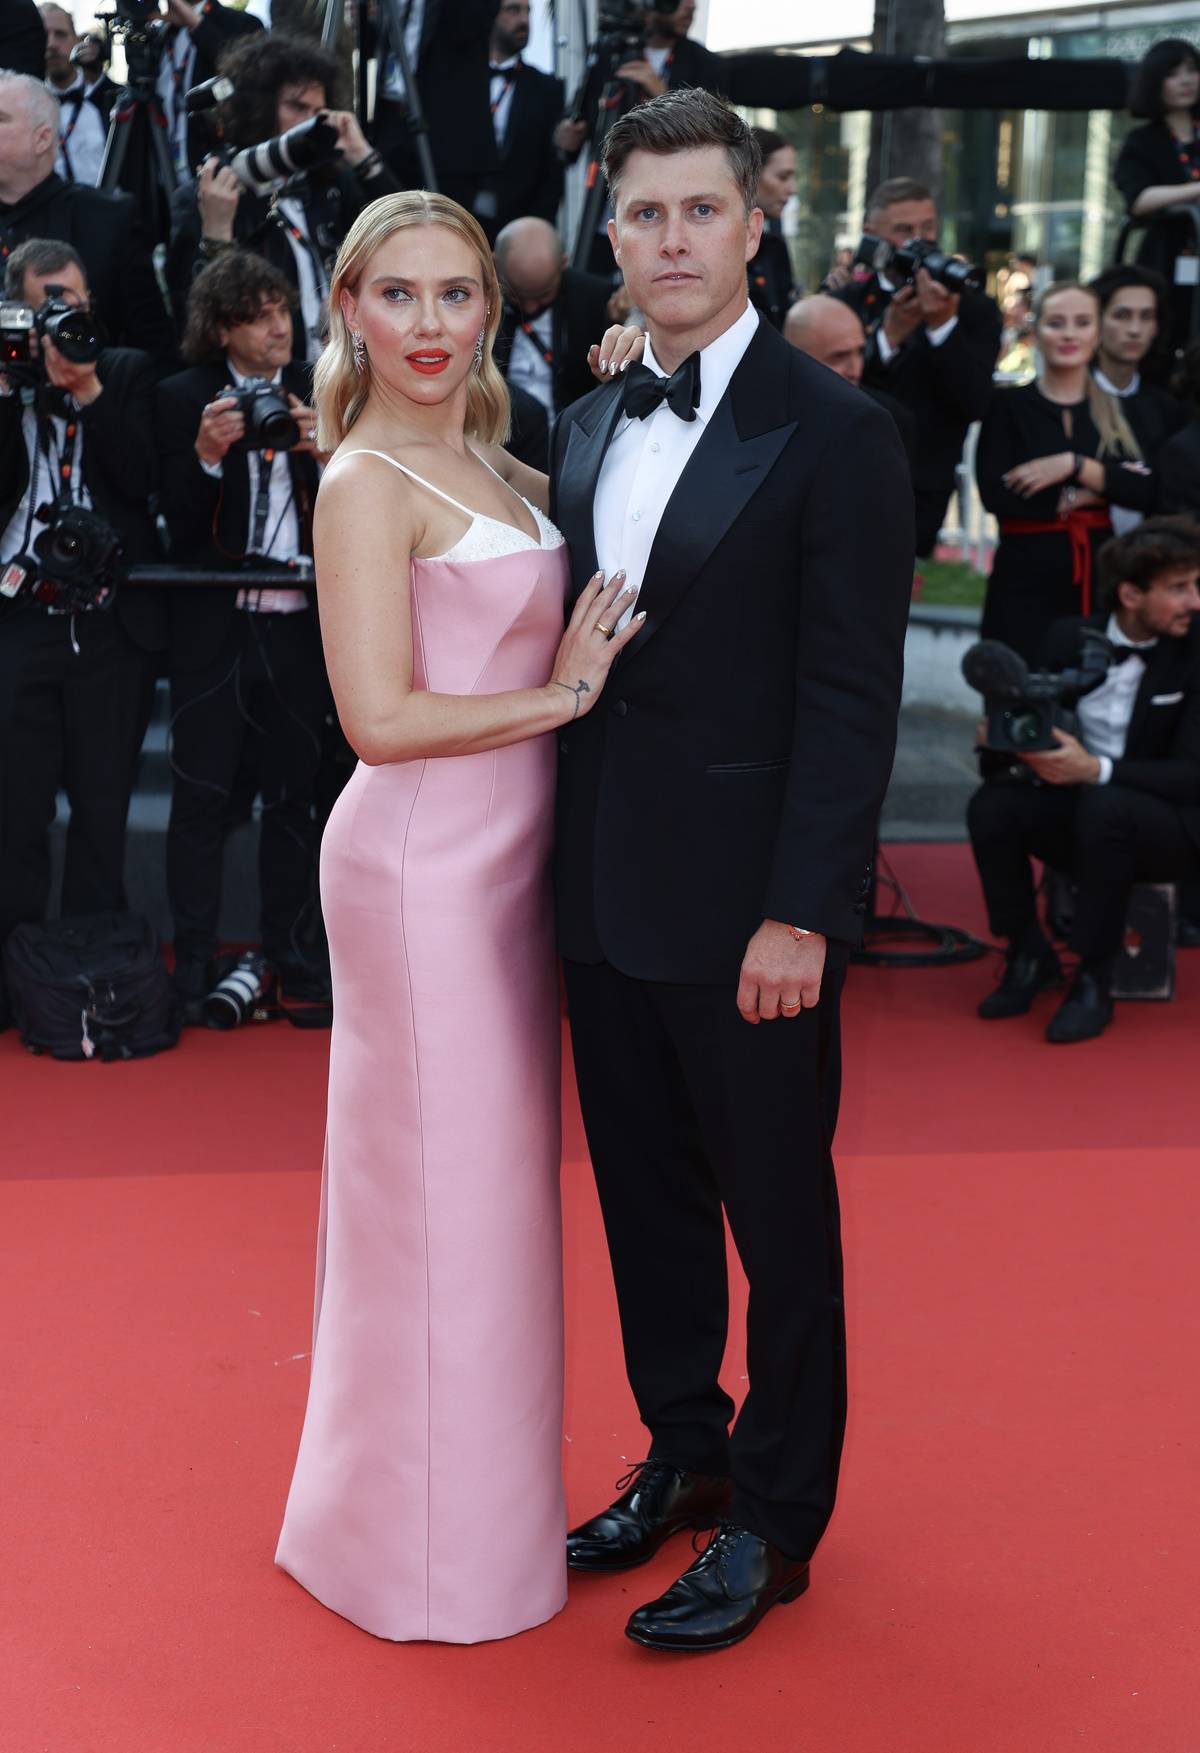 Scarlett Johansson w Cannes w sukience Prady eksponującej biustonosz. Scarlett Johansson na canneńską premierę filmu „Asteroid City” Wesa Andersona wybrała suknię Prady, spod której wystawał biały biustonosz.